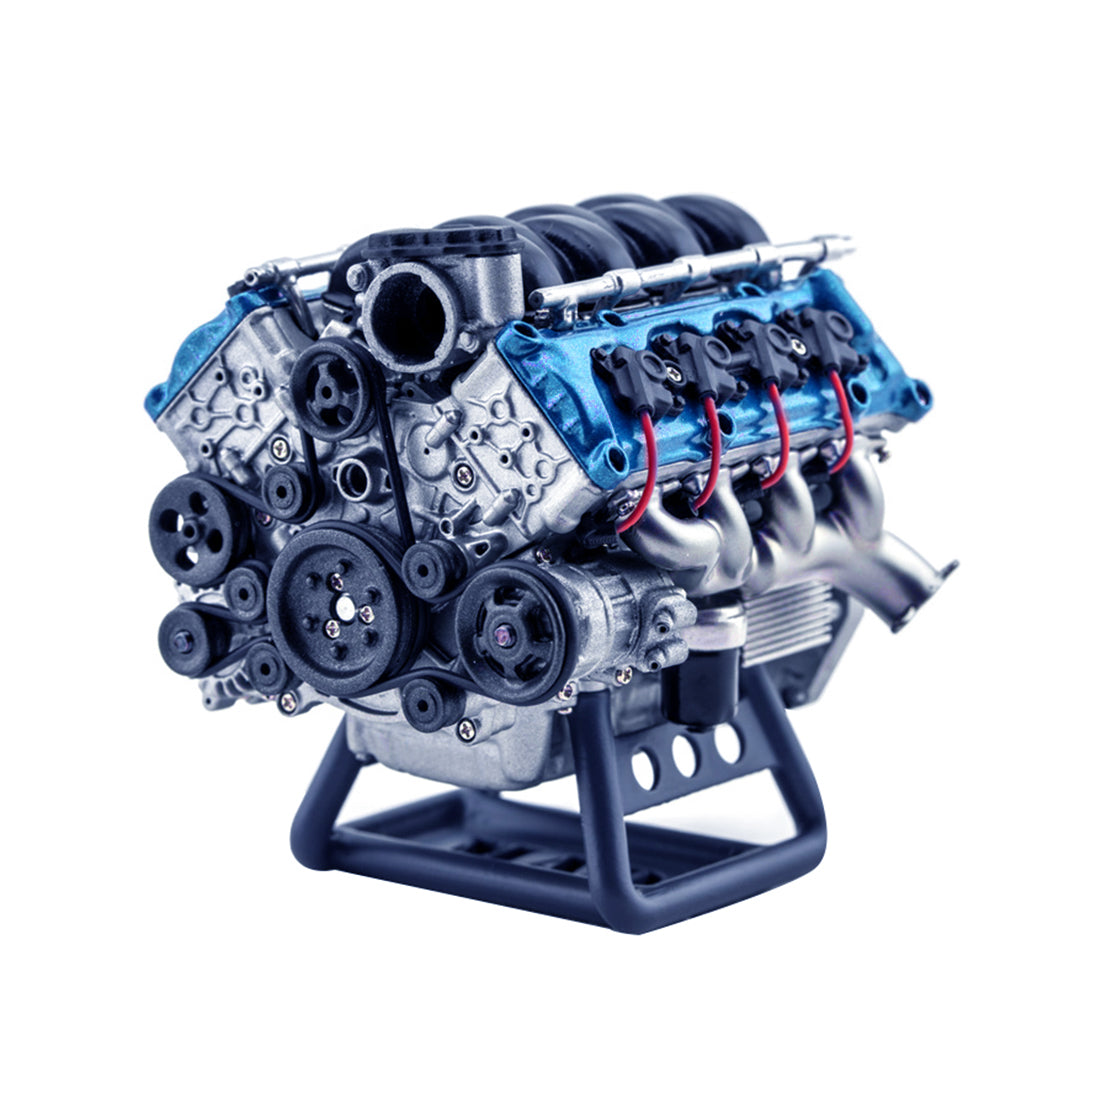 FUNT V8 - Kit de modelo de motor, mini MAD RC dinámico de metal, motor de  combustión interna, montaje de bricolaje, juguete de física para AX90104  SCX10â… Capra VS4-10 Pro /Ultra Model Car - Versión : Juguetes y Juegos 